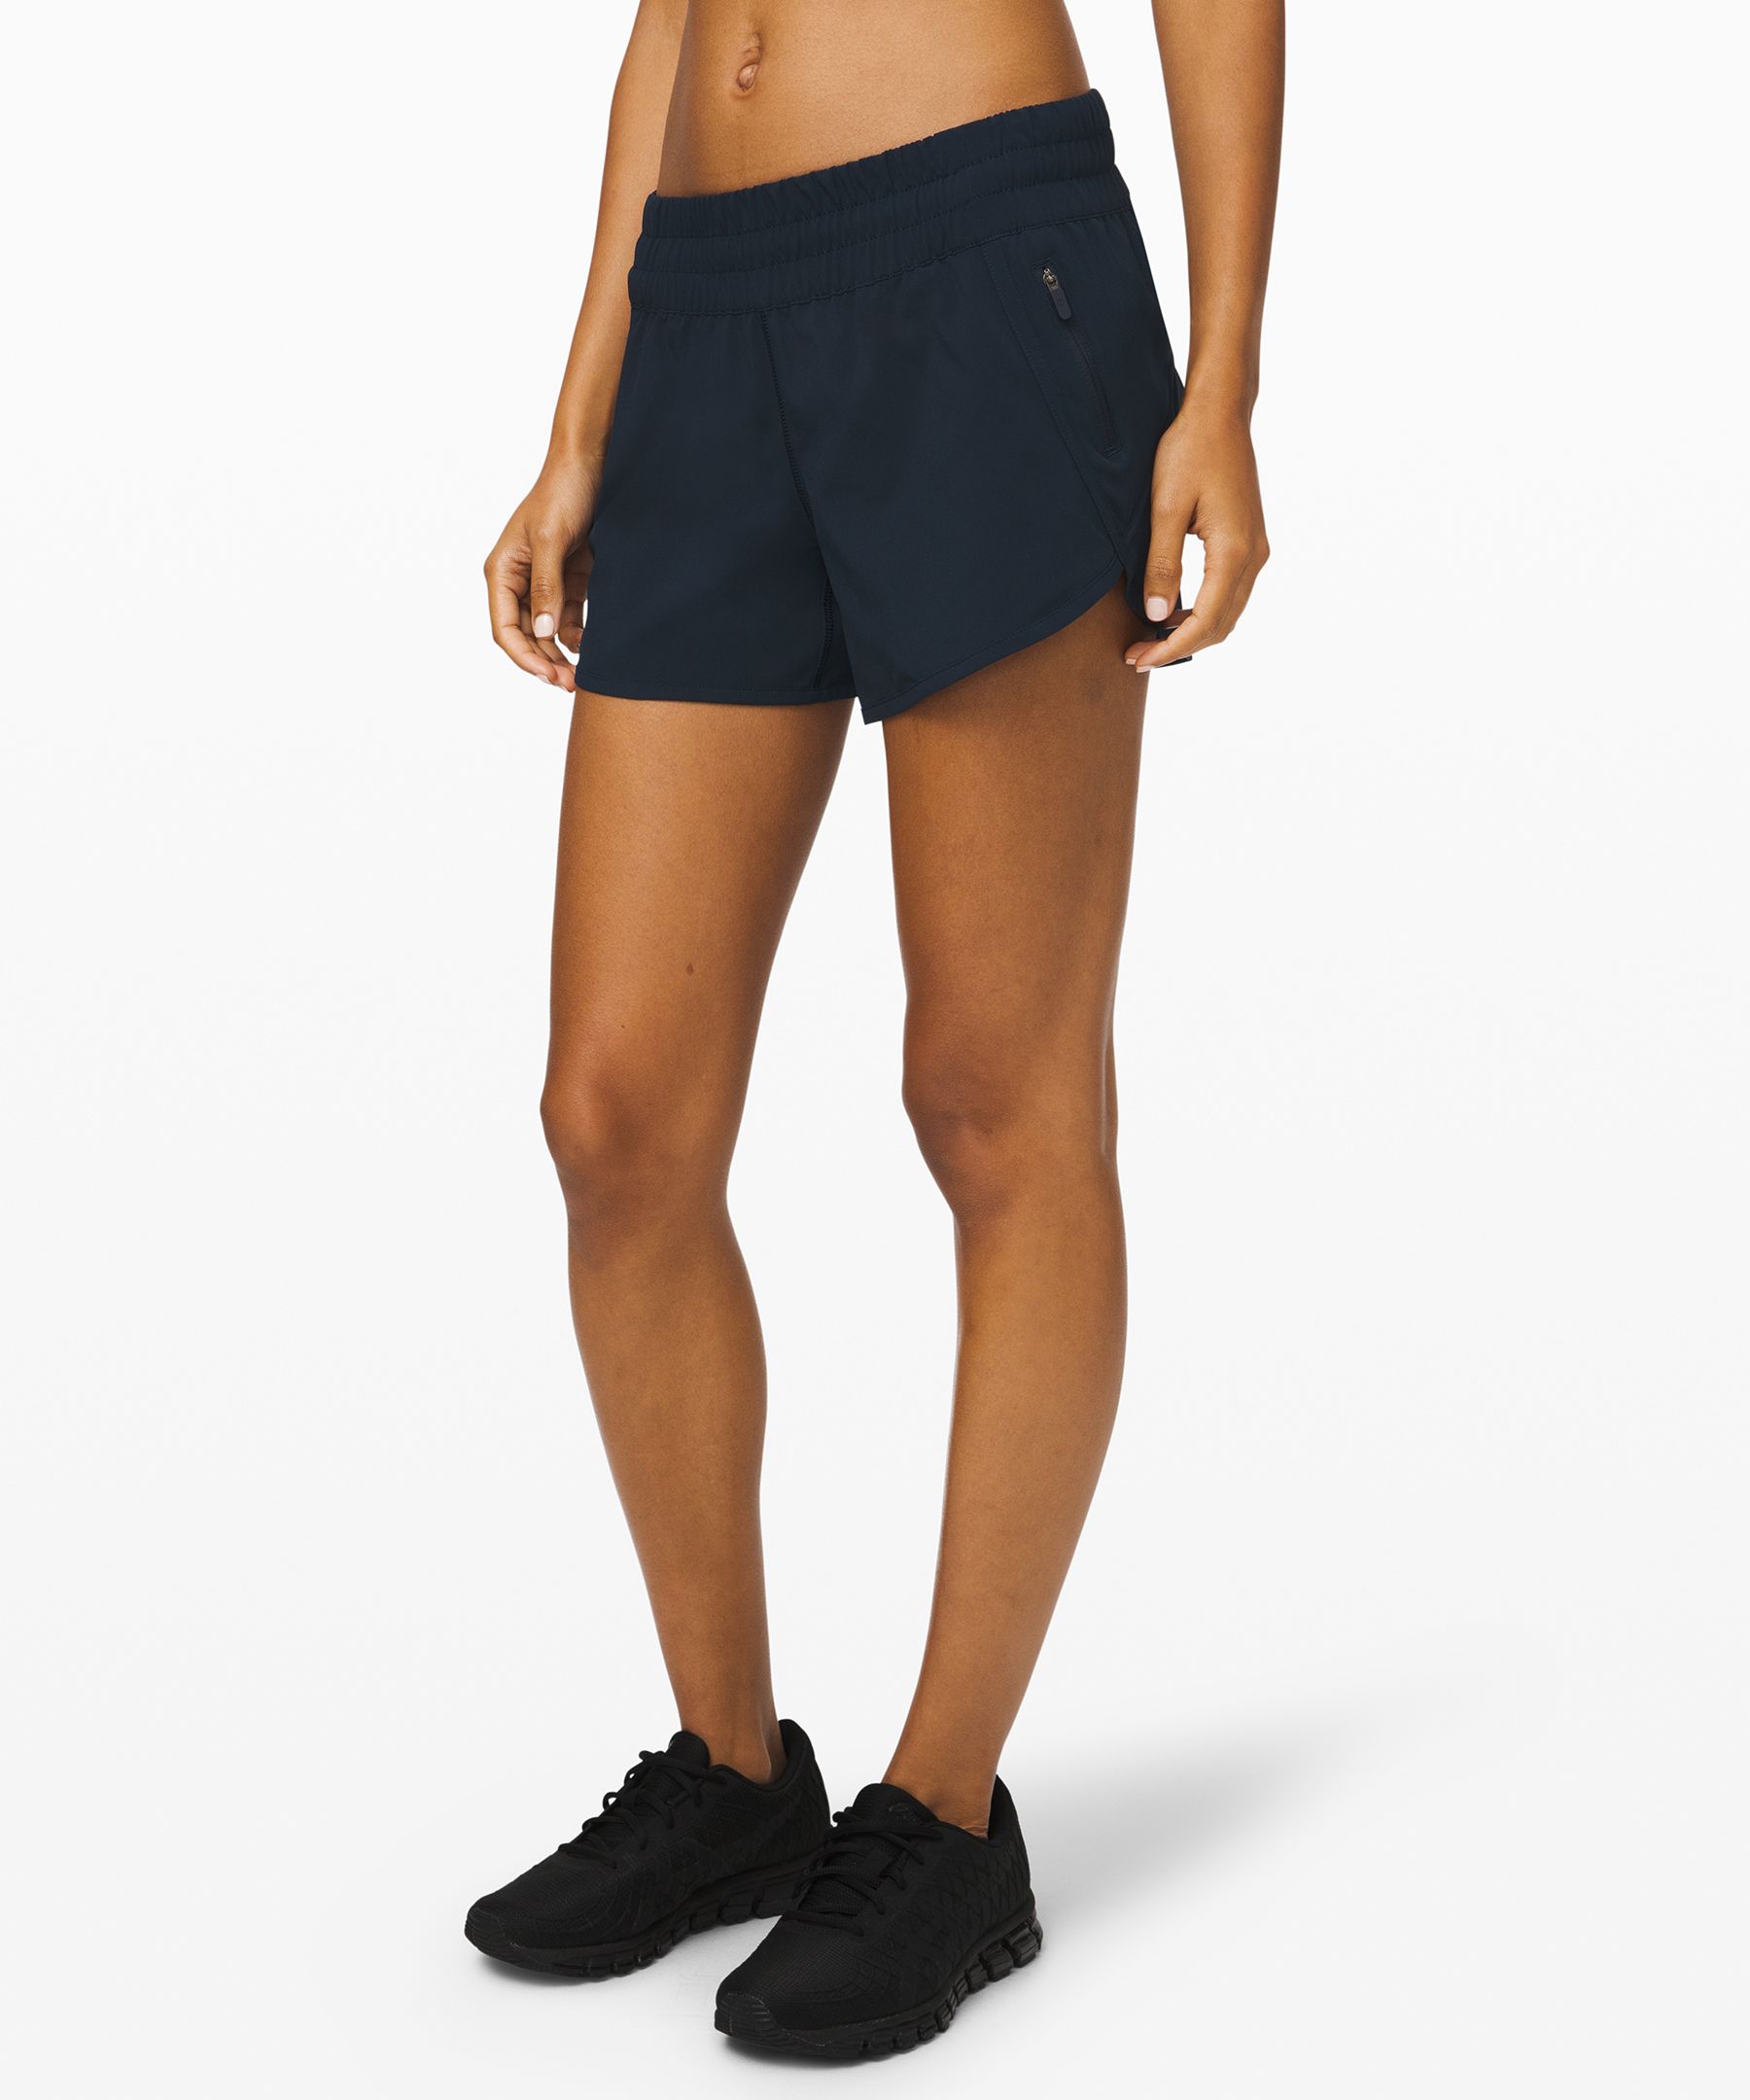 lululemon women's athletic shorts